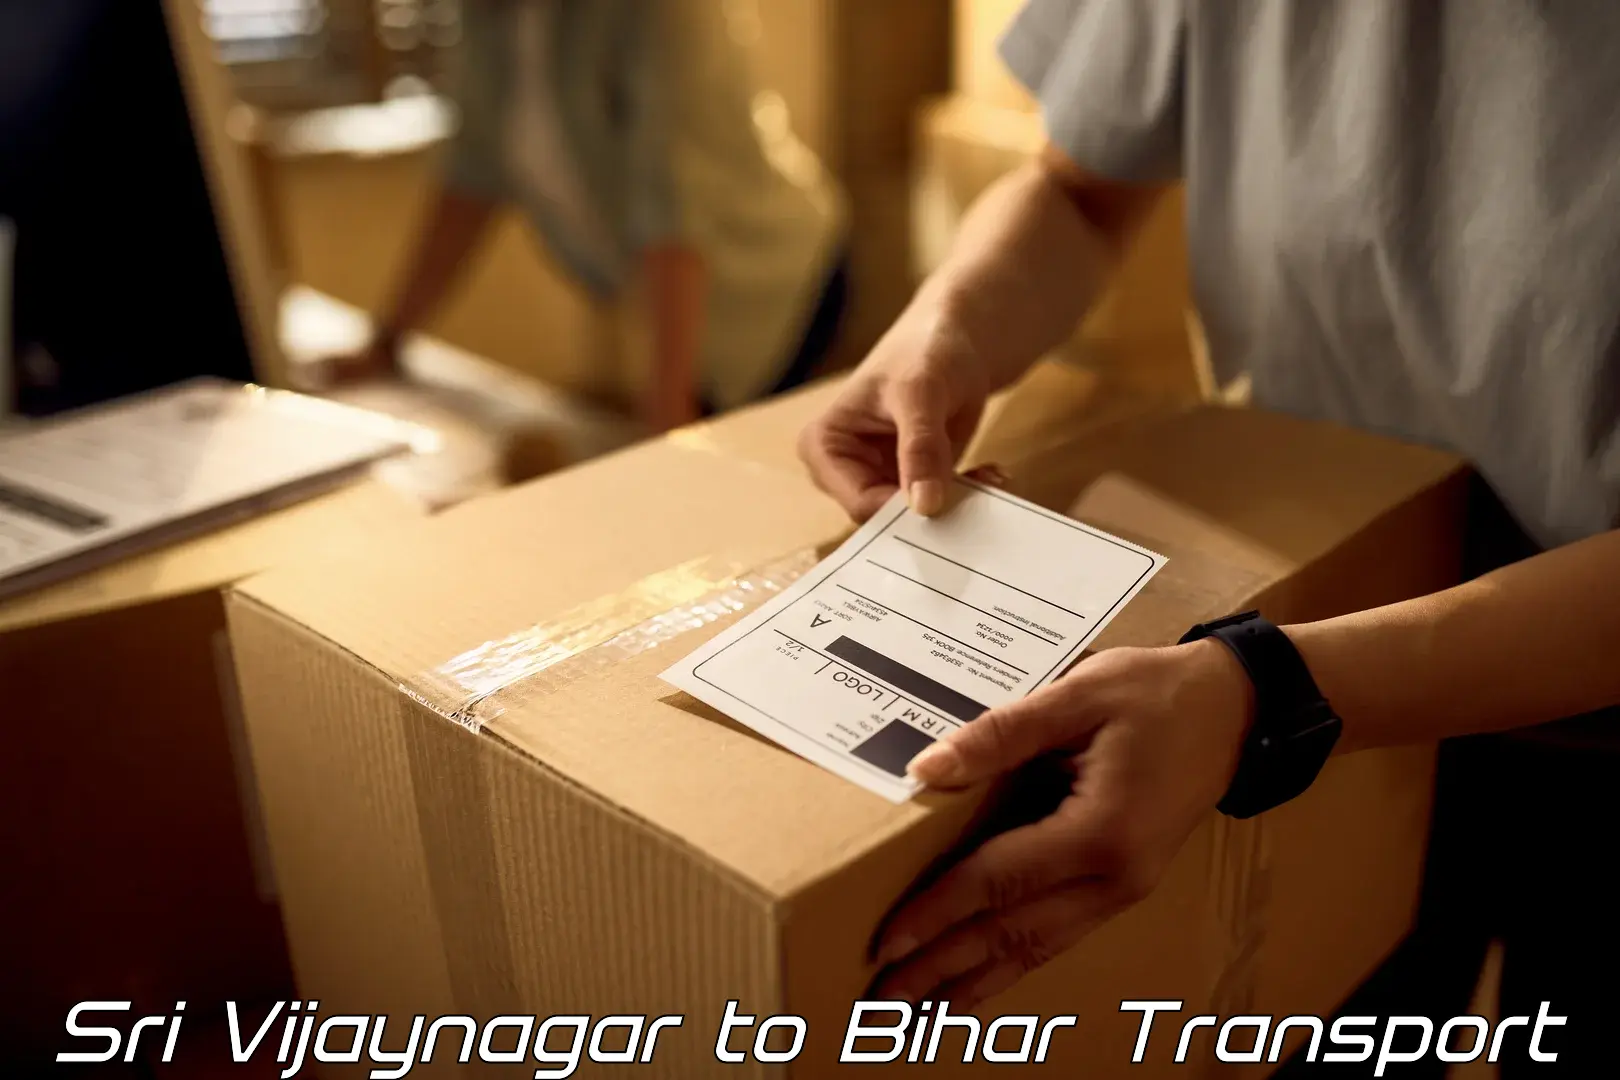 Transport in sharing Sri Vijaynagar to Baisi